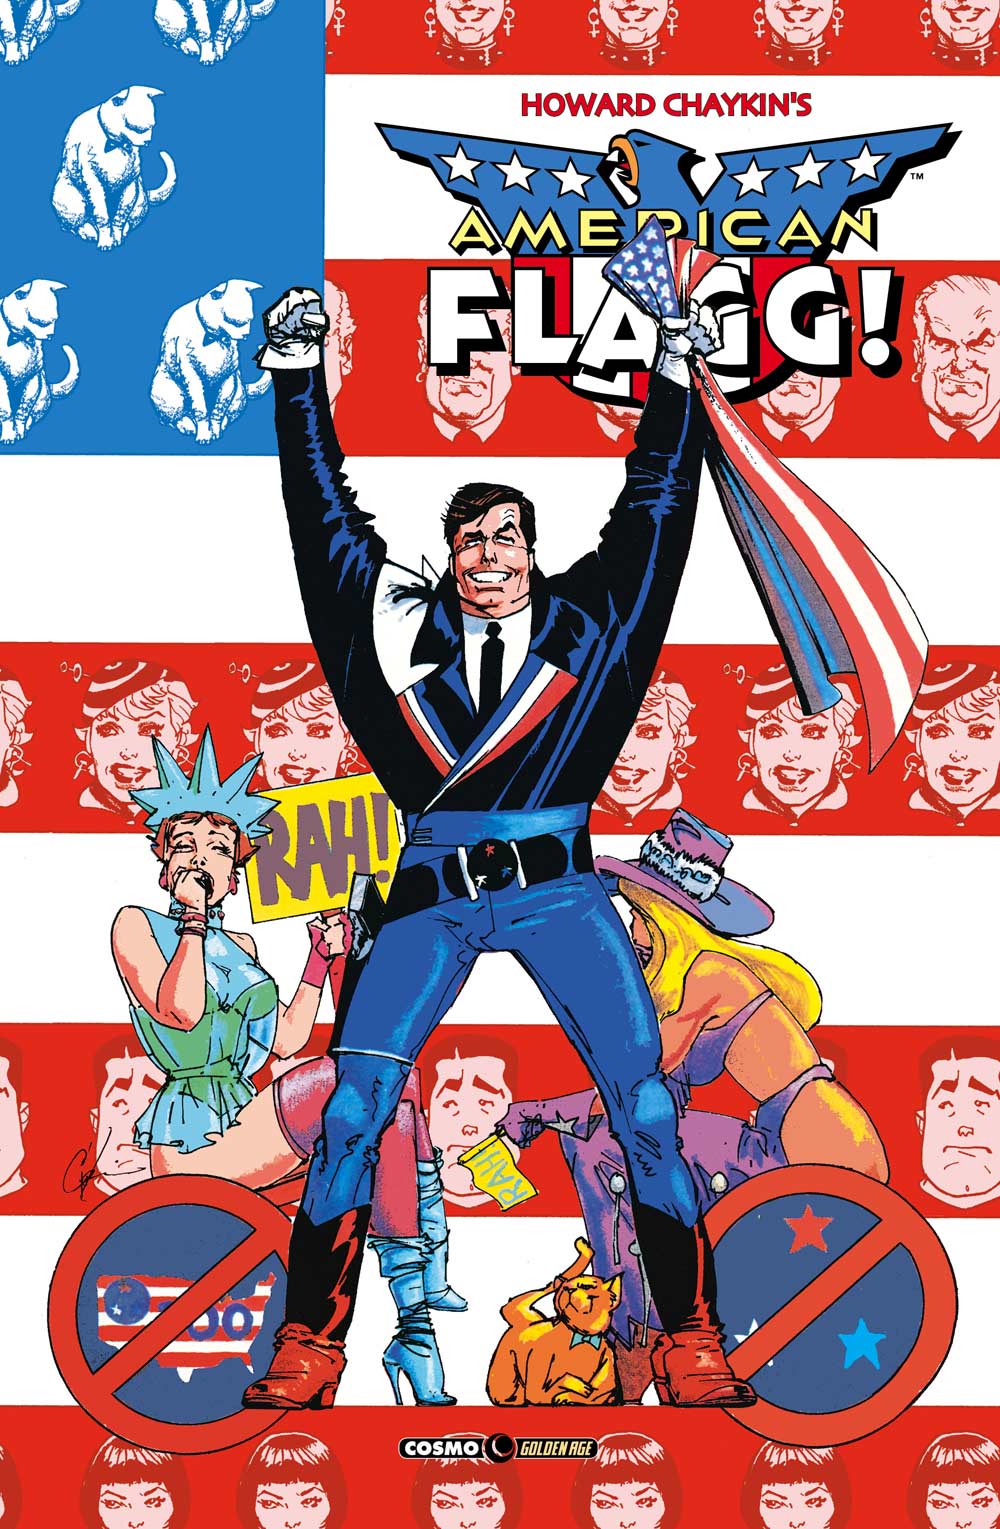 Libri Howard Chaykin - American Flagg! Vol 06 NUOVO SIGILLATO, EDIZIONE DEL 14/05/2020 SUBITO DISPONIBILE